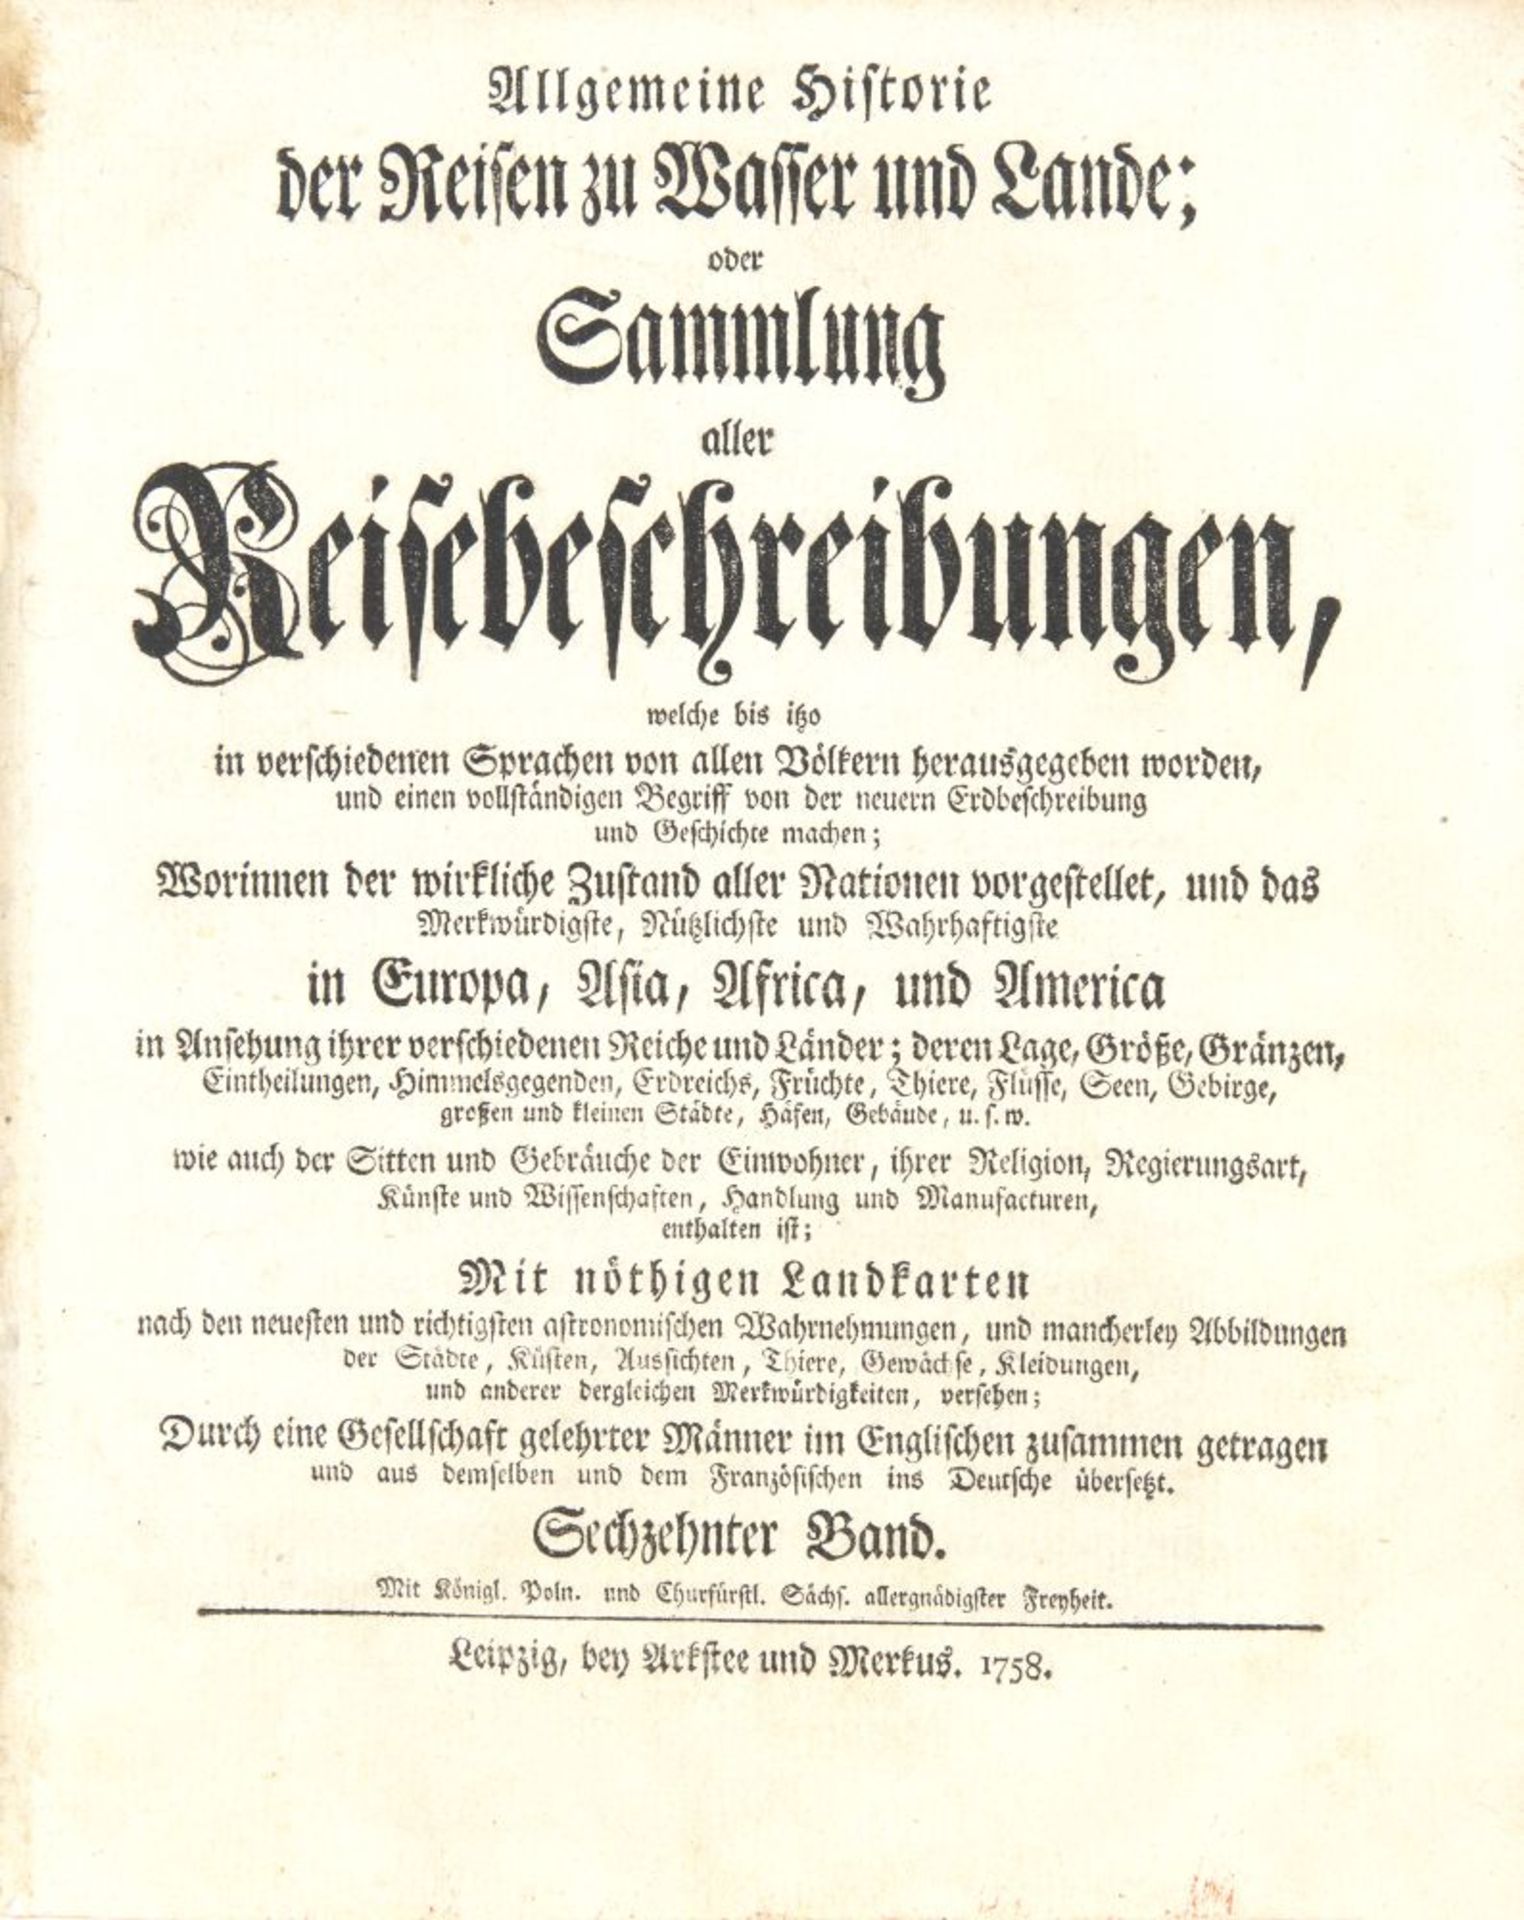 J. J. Schwabe, Reisebeschreibungen, Bd. XVI. Lpz 1758. - Image 2 of 4